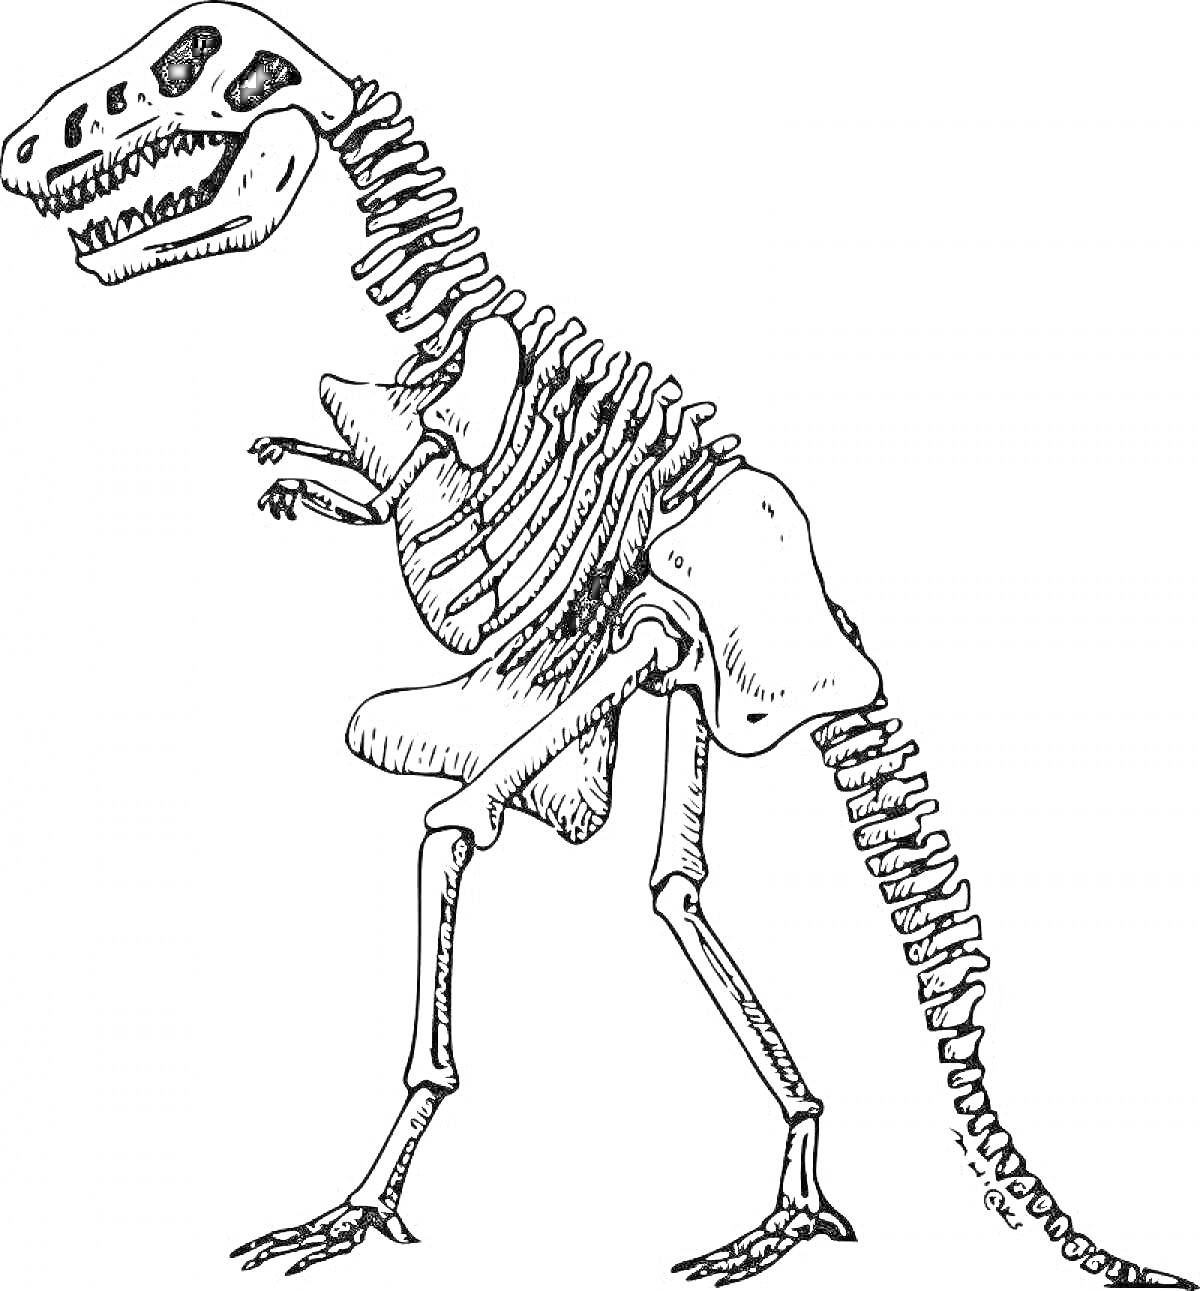 Раскраска Скелет динозавра с поднятой передней лапой, крупный череп с зубами, позвоночник и хвост, ребра и тазовые кости.